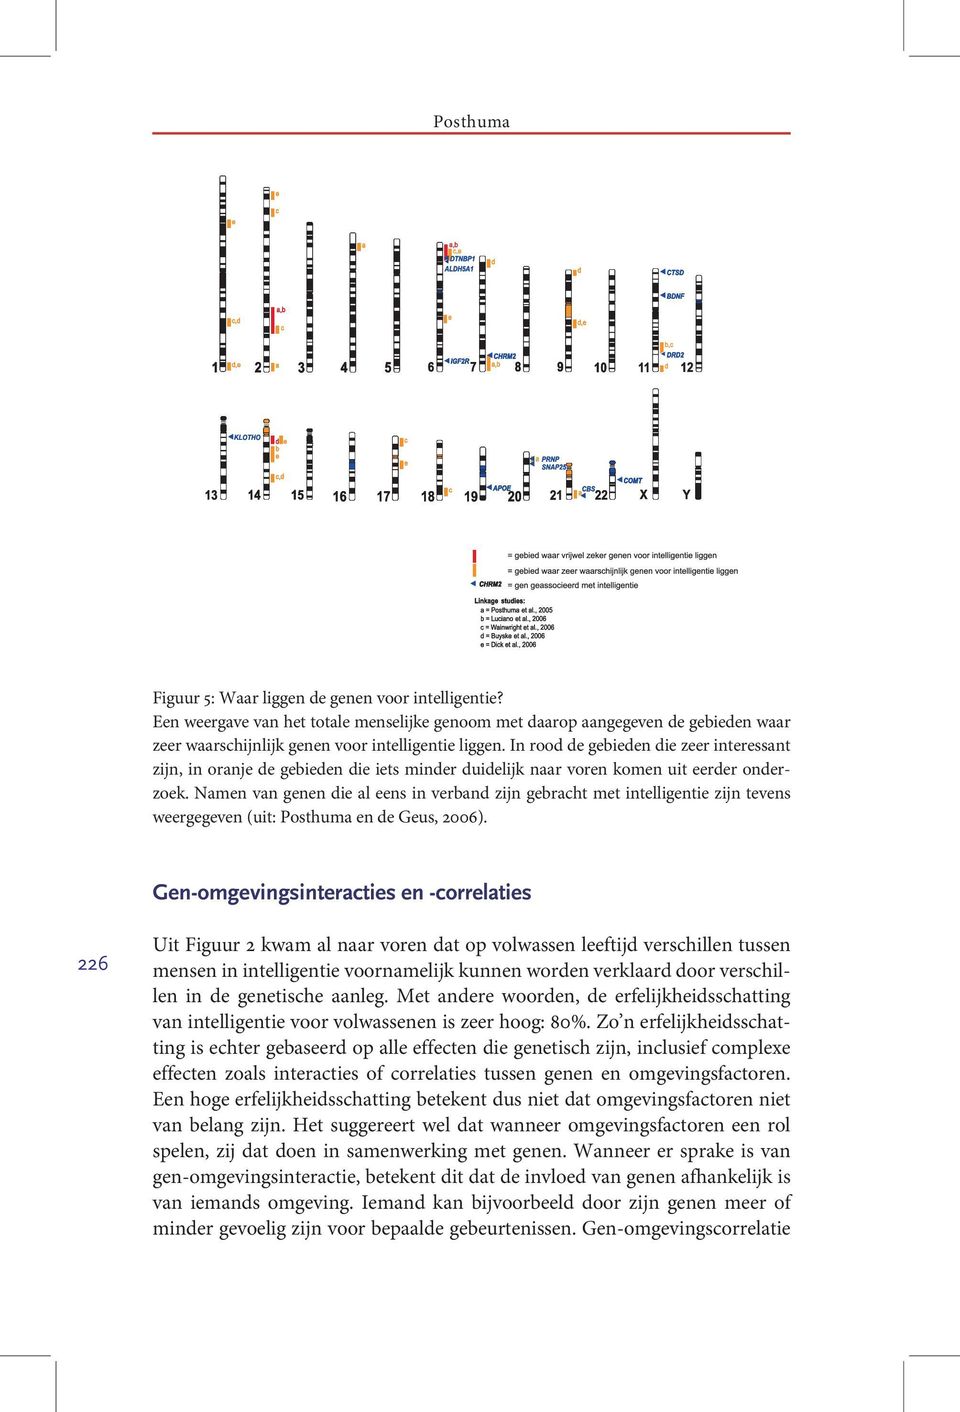 Namen van genen die al eens in verband zijn gebracht met intelligentie zijn tevens weergegeven (uit: Posthuma en de Geus, 2006).